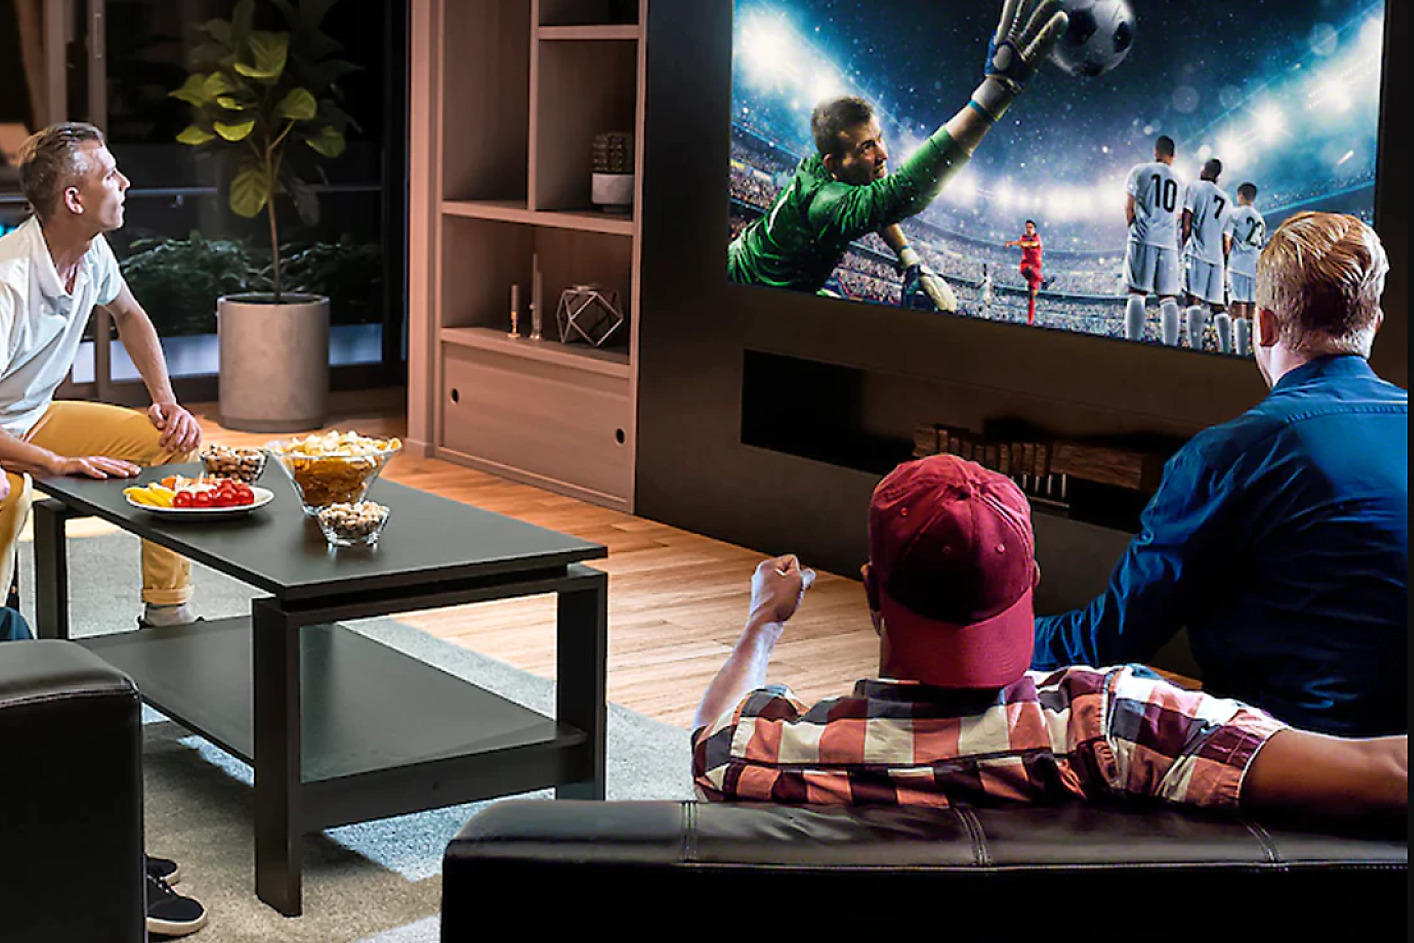 Tres personas en una sala de estar observan la televisión, que muestra un arquero dando un salto para atrapar la pelota.